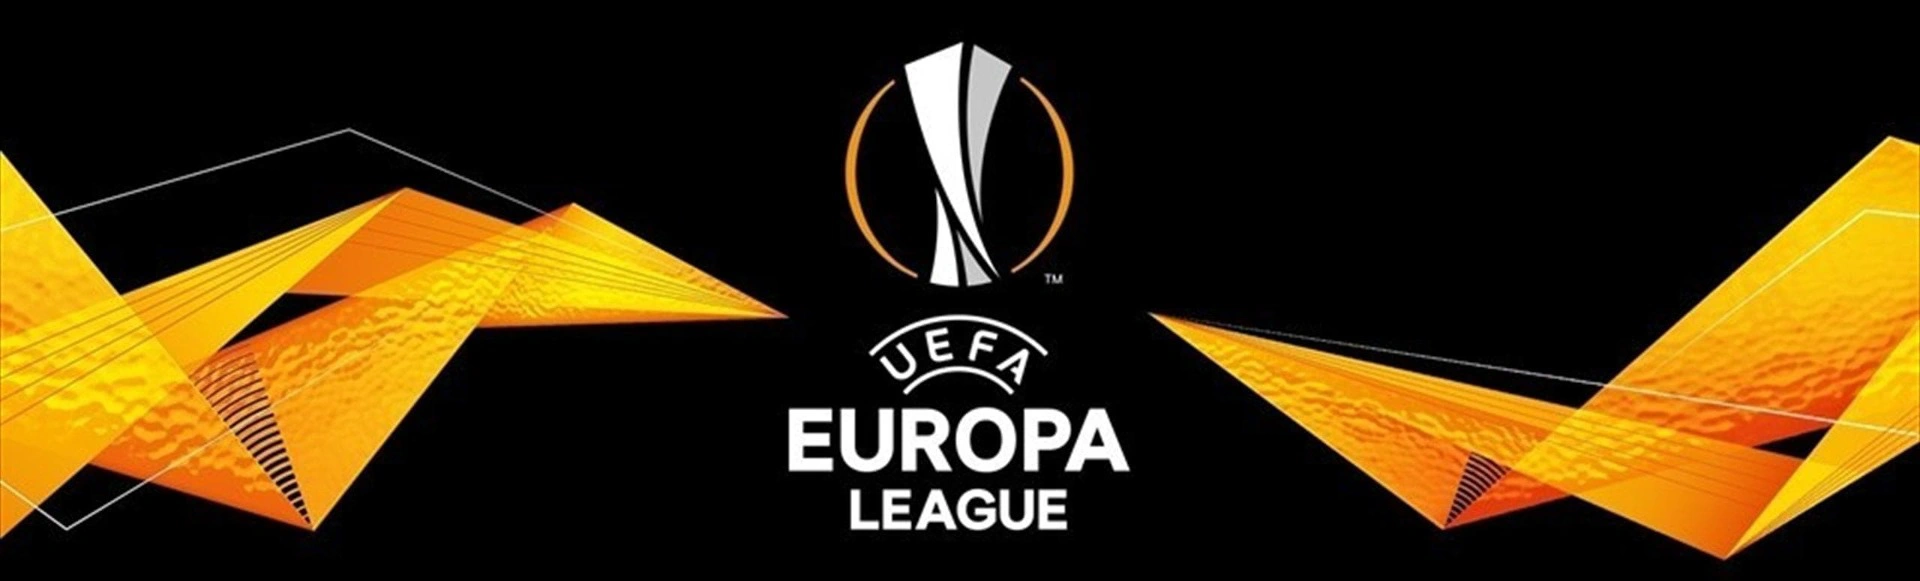 Зенит - Бетис. Лига Европы